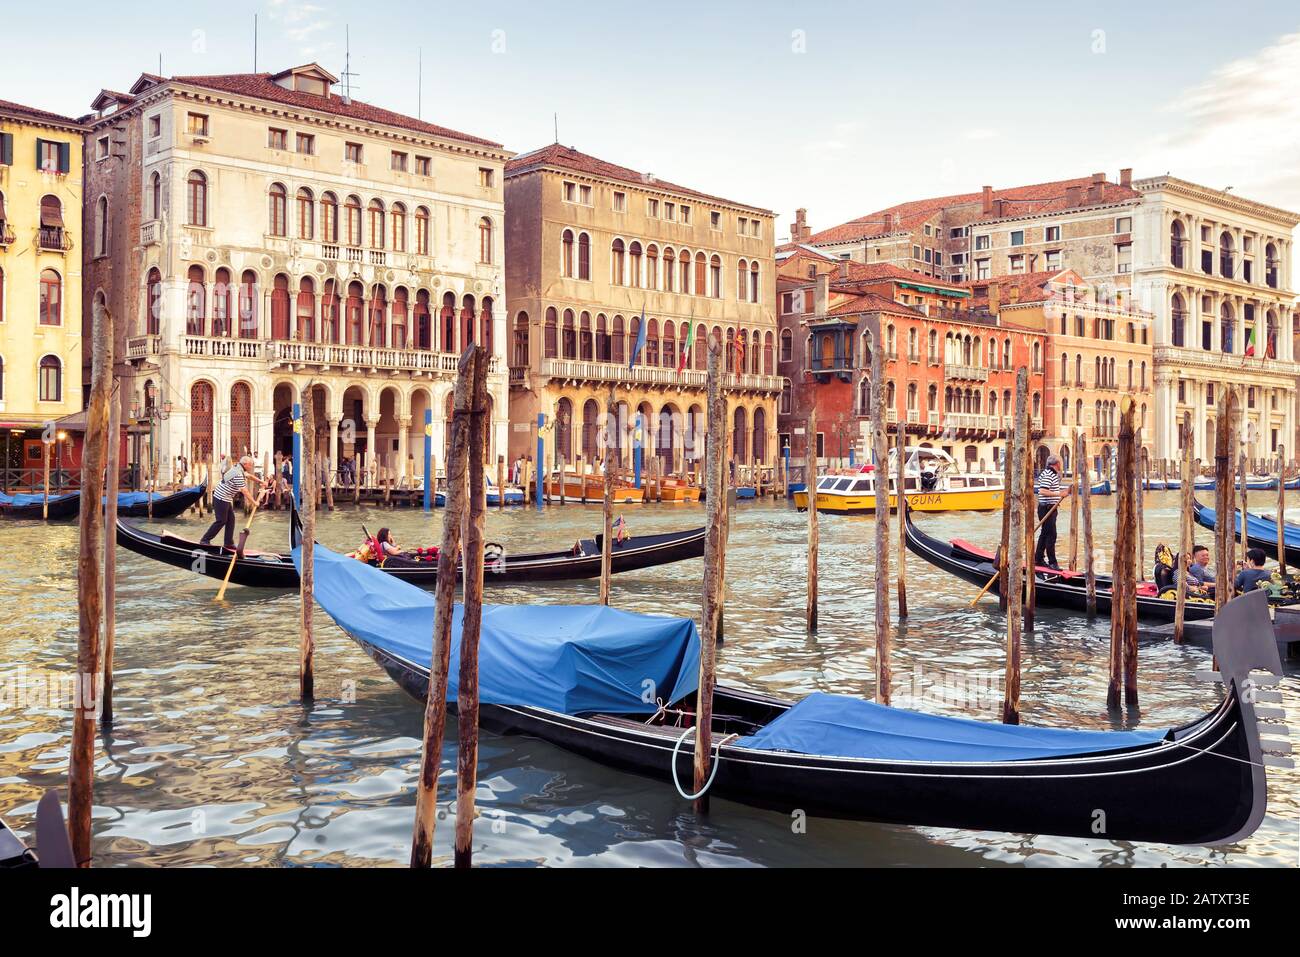 Venezia, Italia - 21 maggio 2017: Ormeggio per gondole sul Canal Grande. La gondola è il mezzo di trasporto turistico più attraente di Venezia. Foto Stock